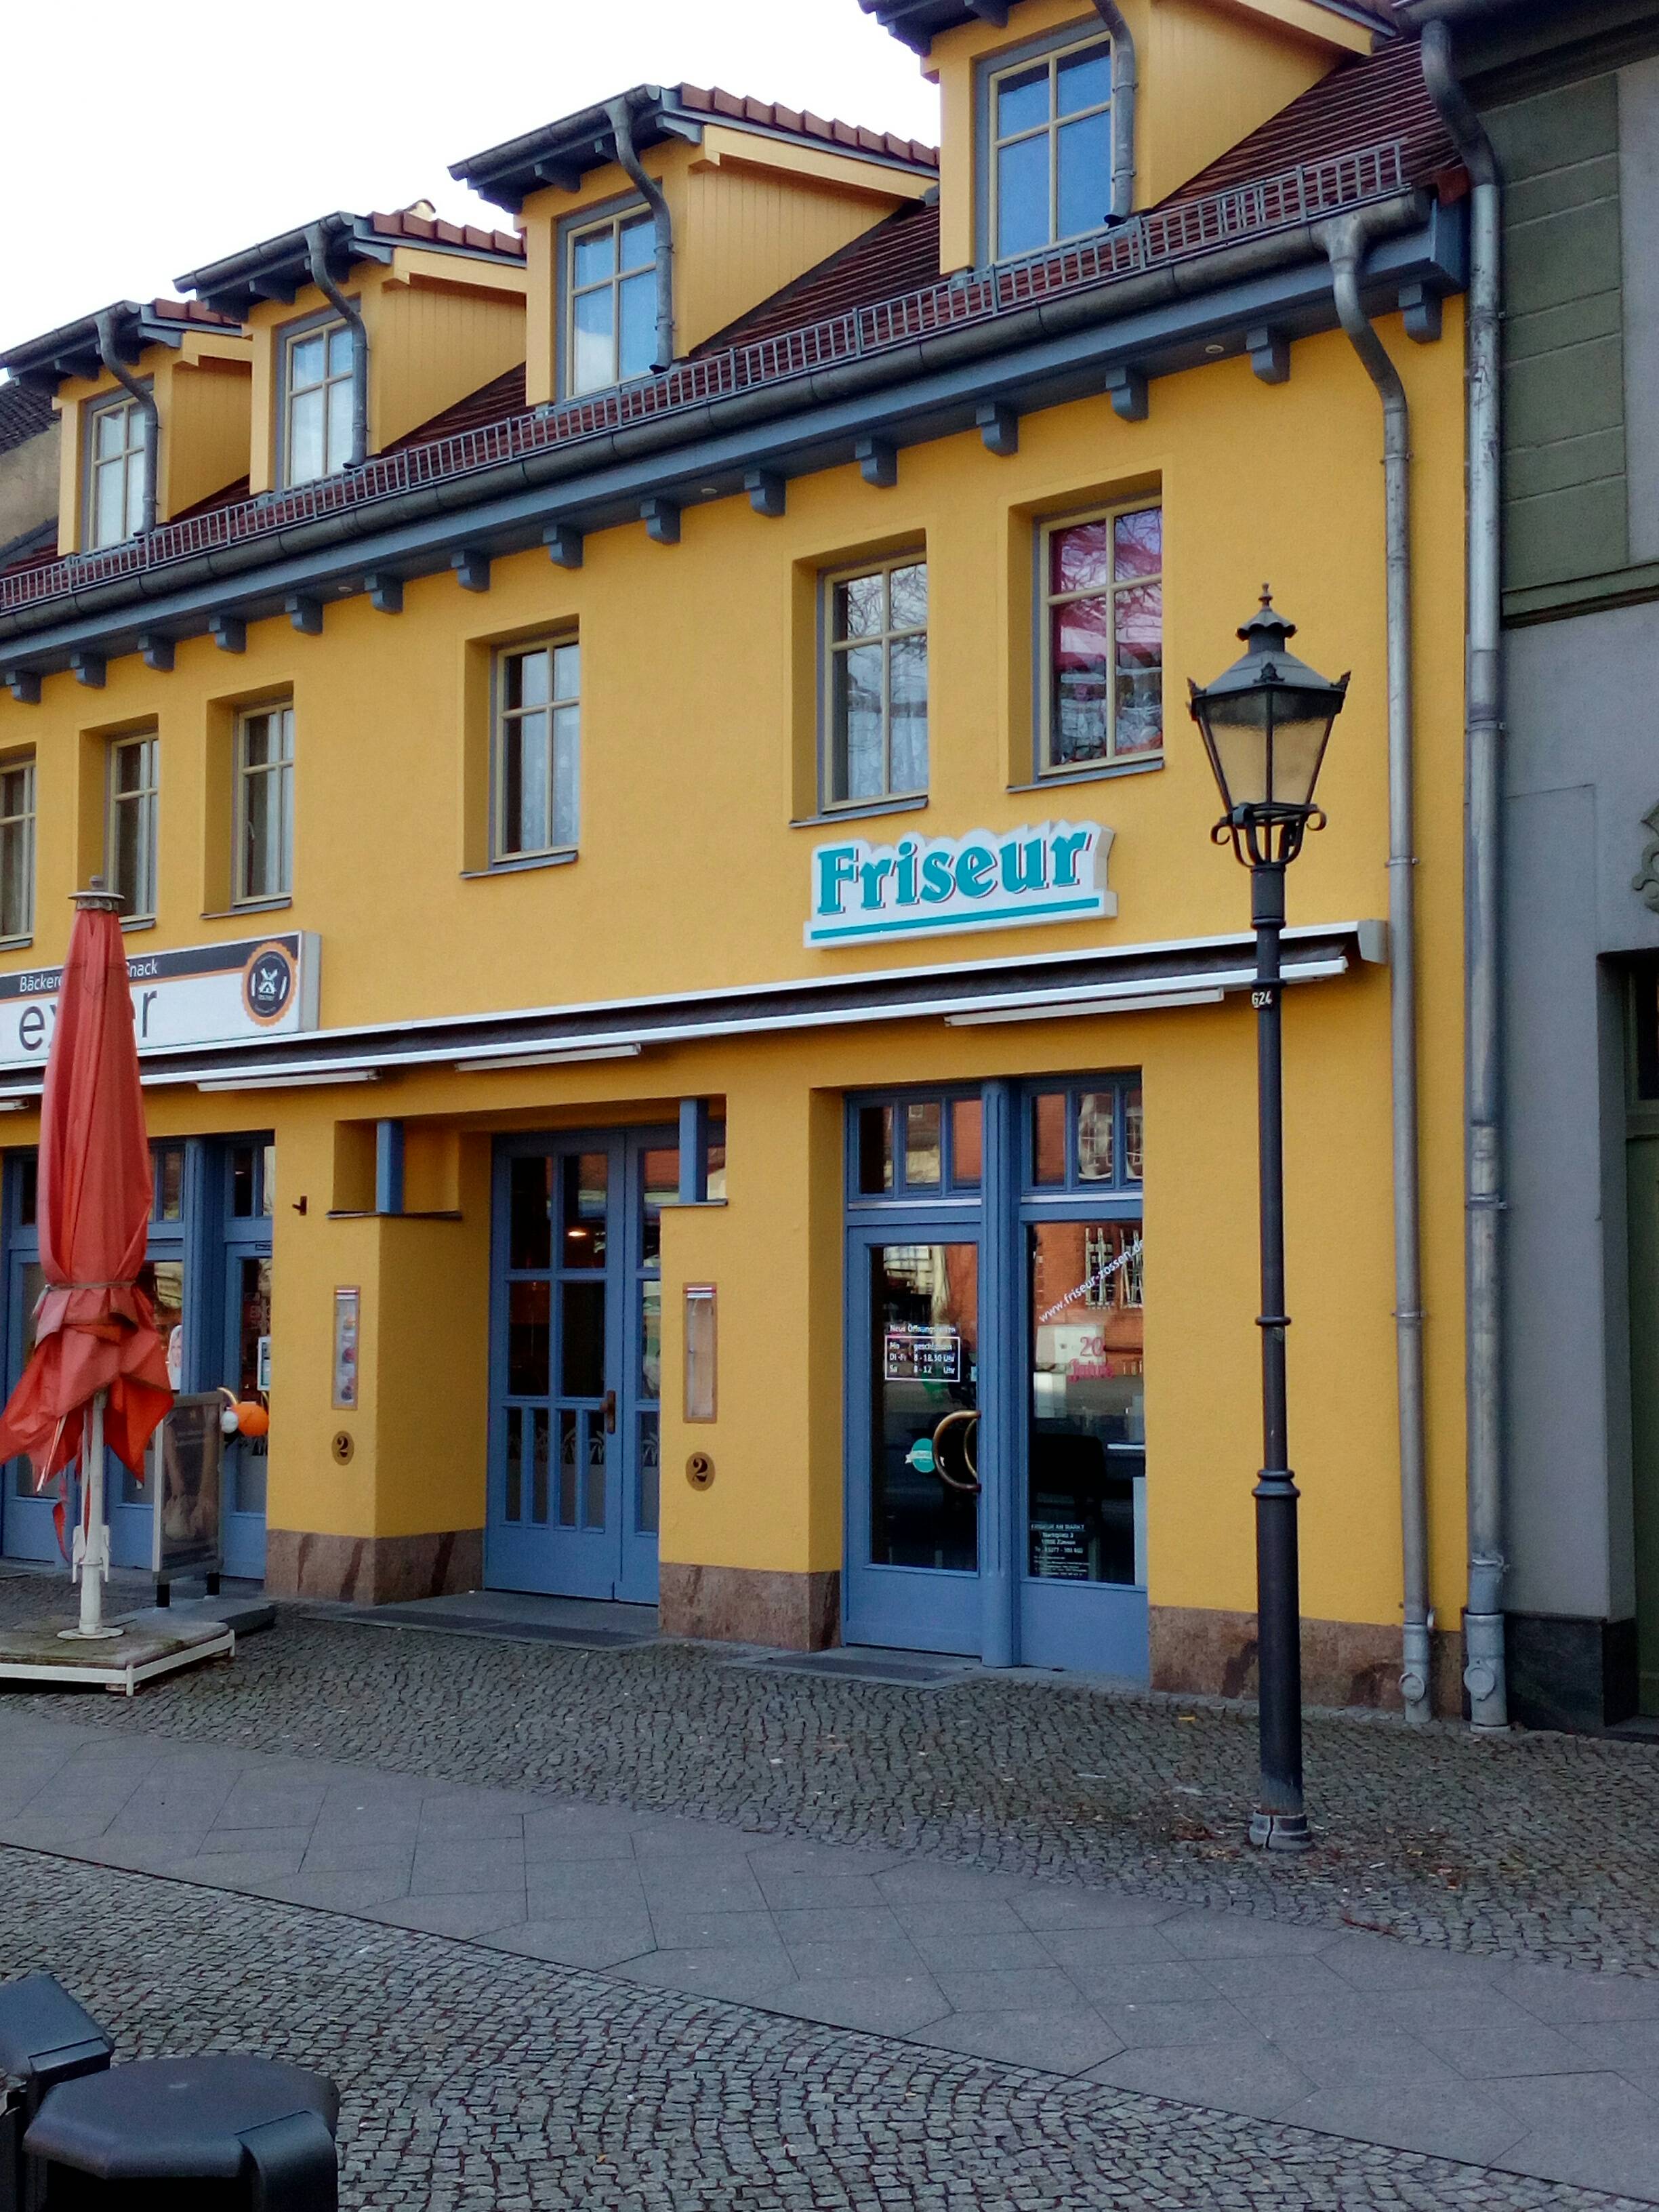 Bild 1 Friseur Am Markt GmbH in Zossen